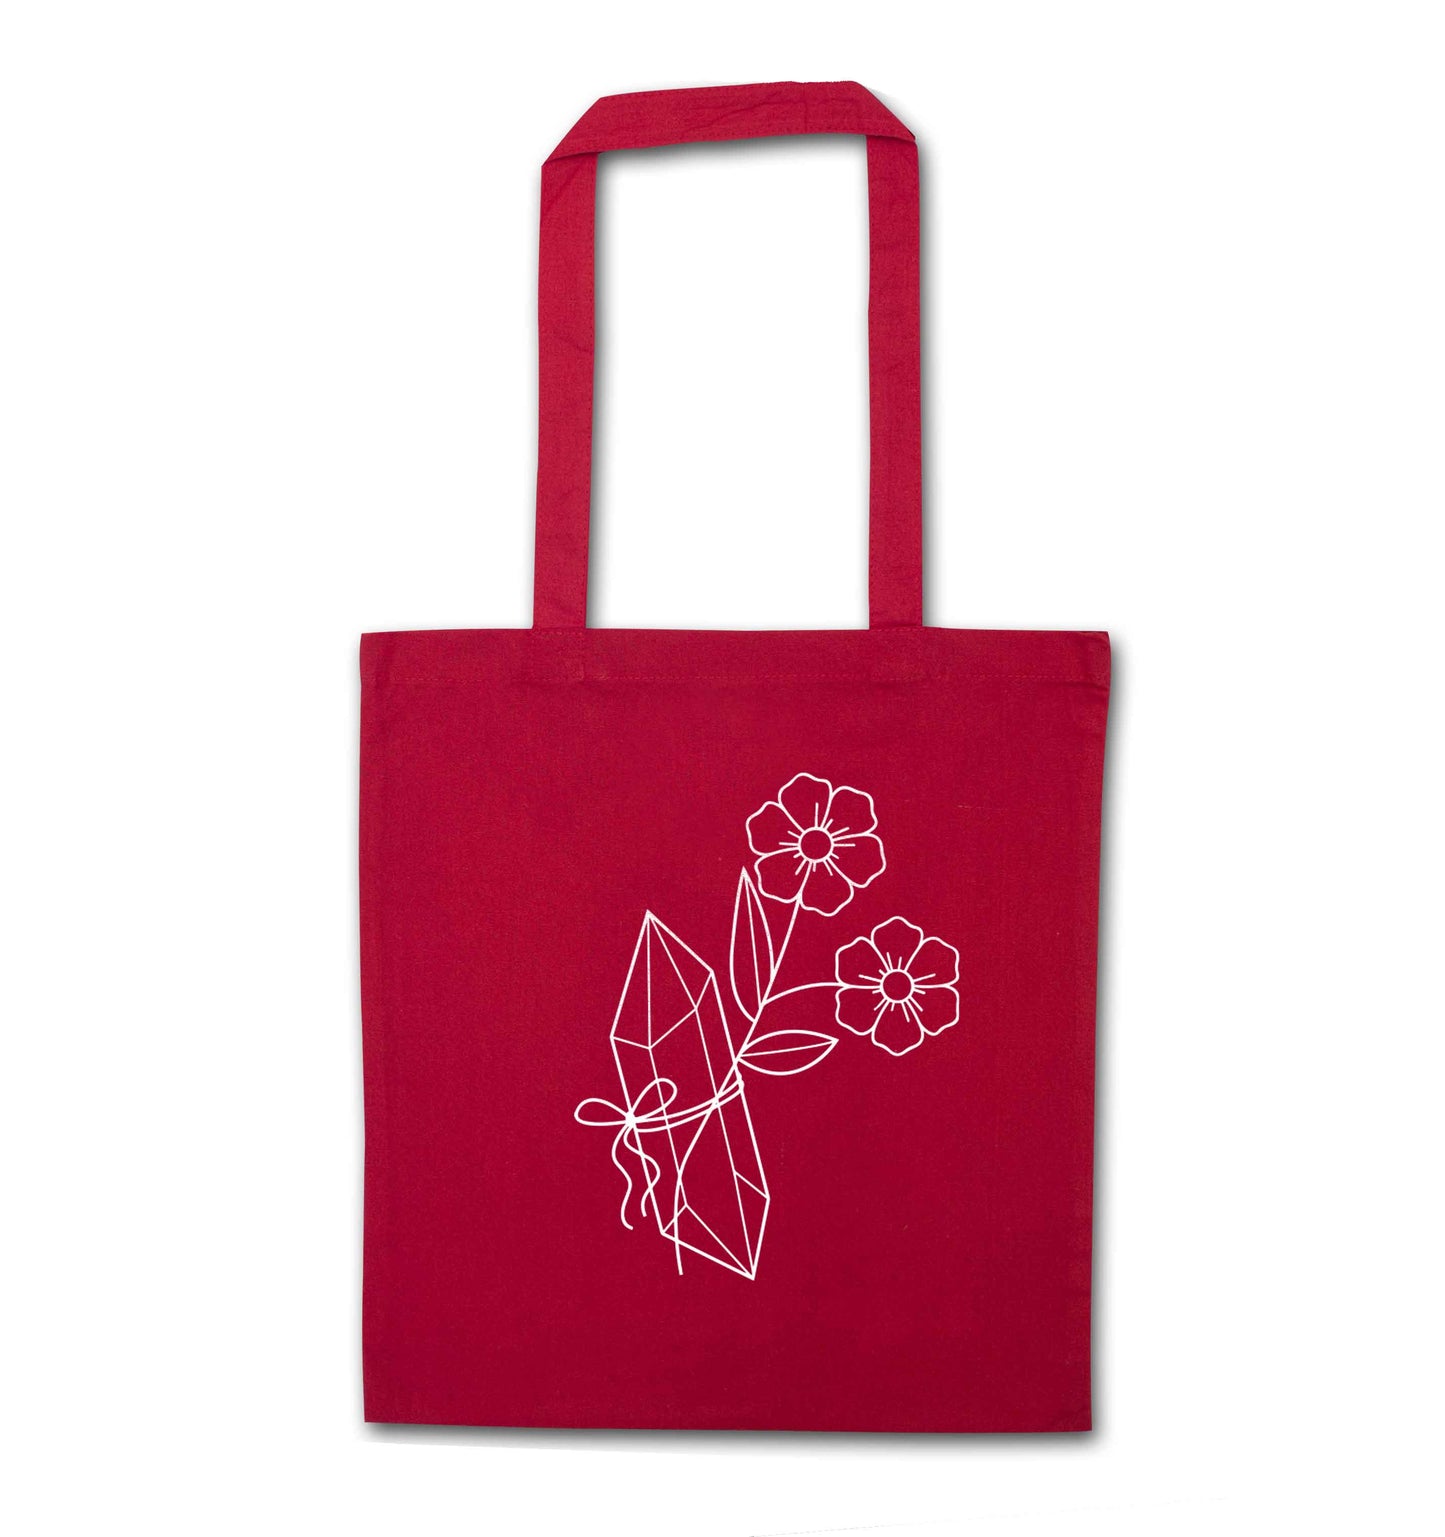 Crystal flower illustration red tote bag